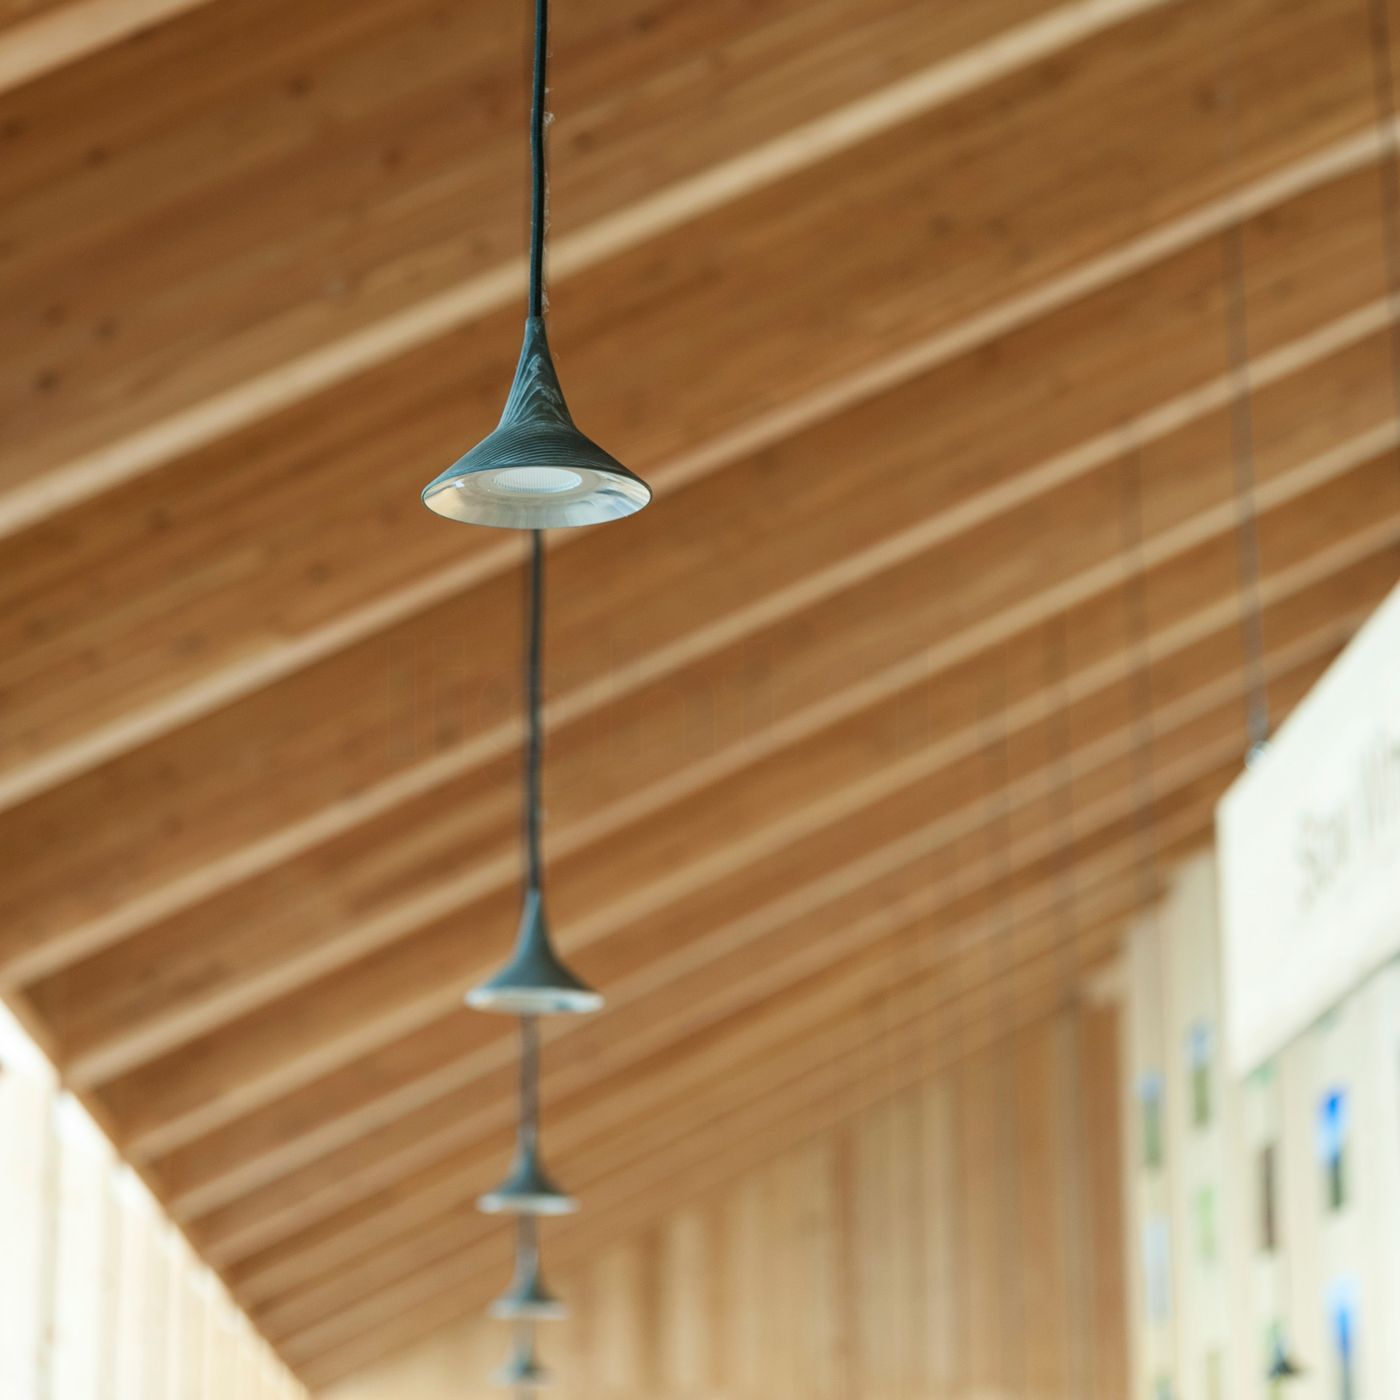 Hanging lamp Unterlinden by Artemide